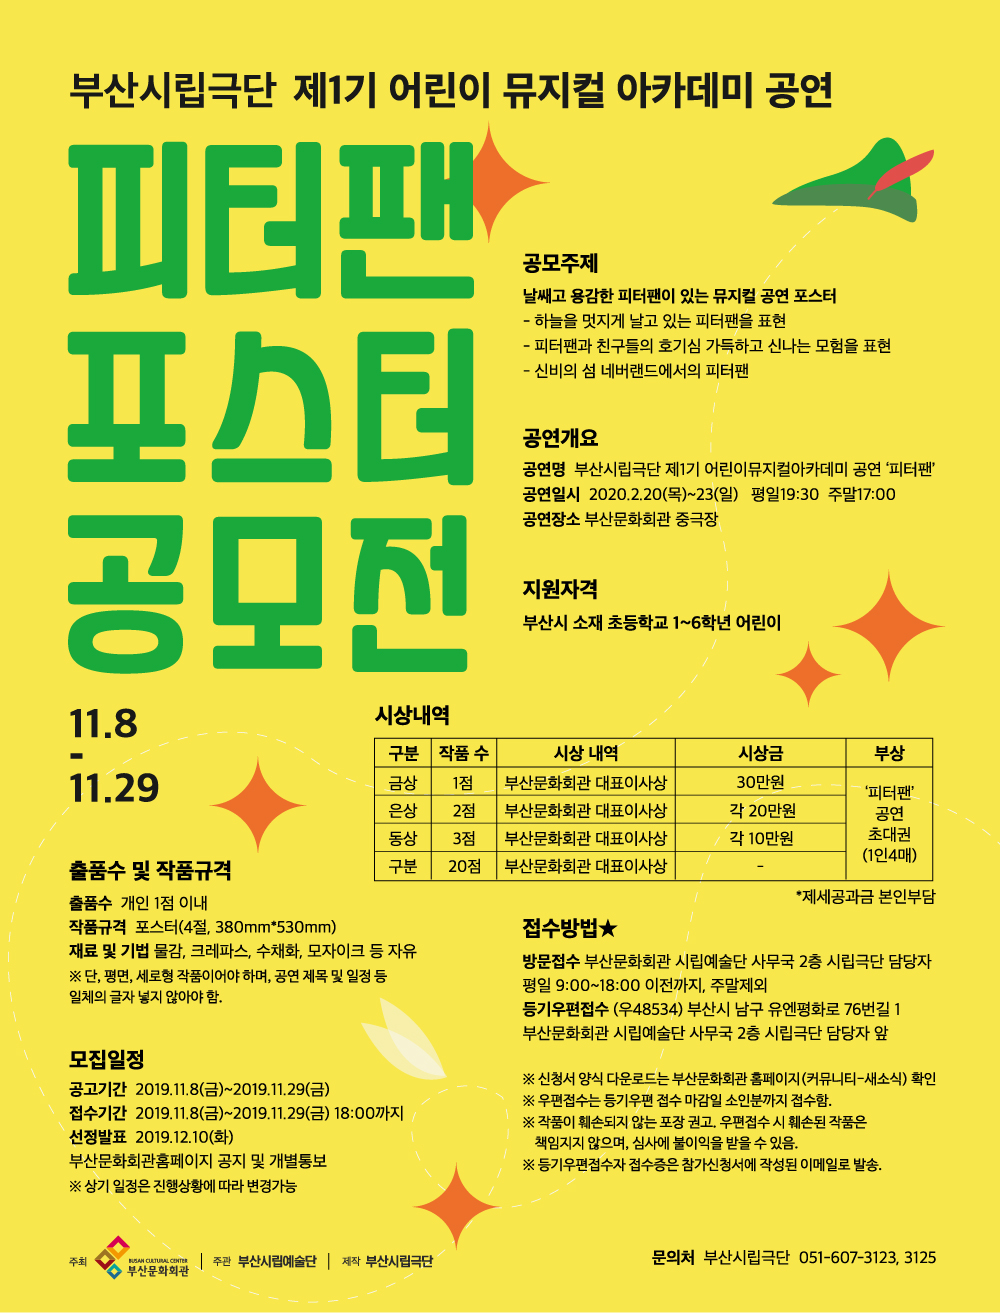 [공지] 부산시립극단 제1기 어린이 뮤지컬 아카데미 공연 '피터팬' 포스터 공모전 재공고